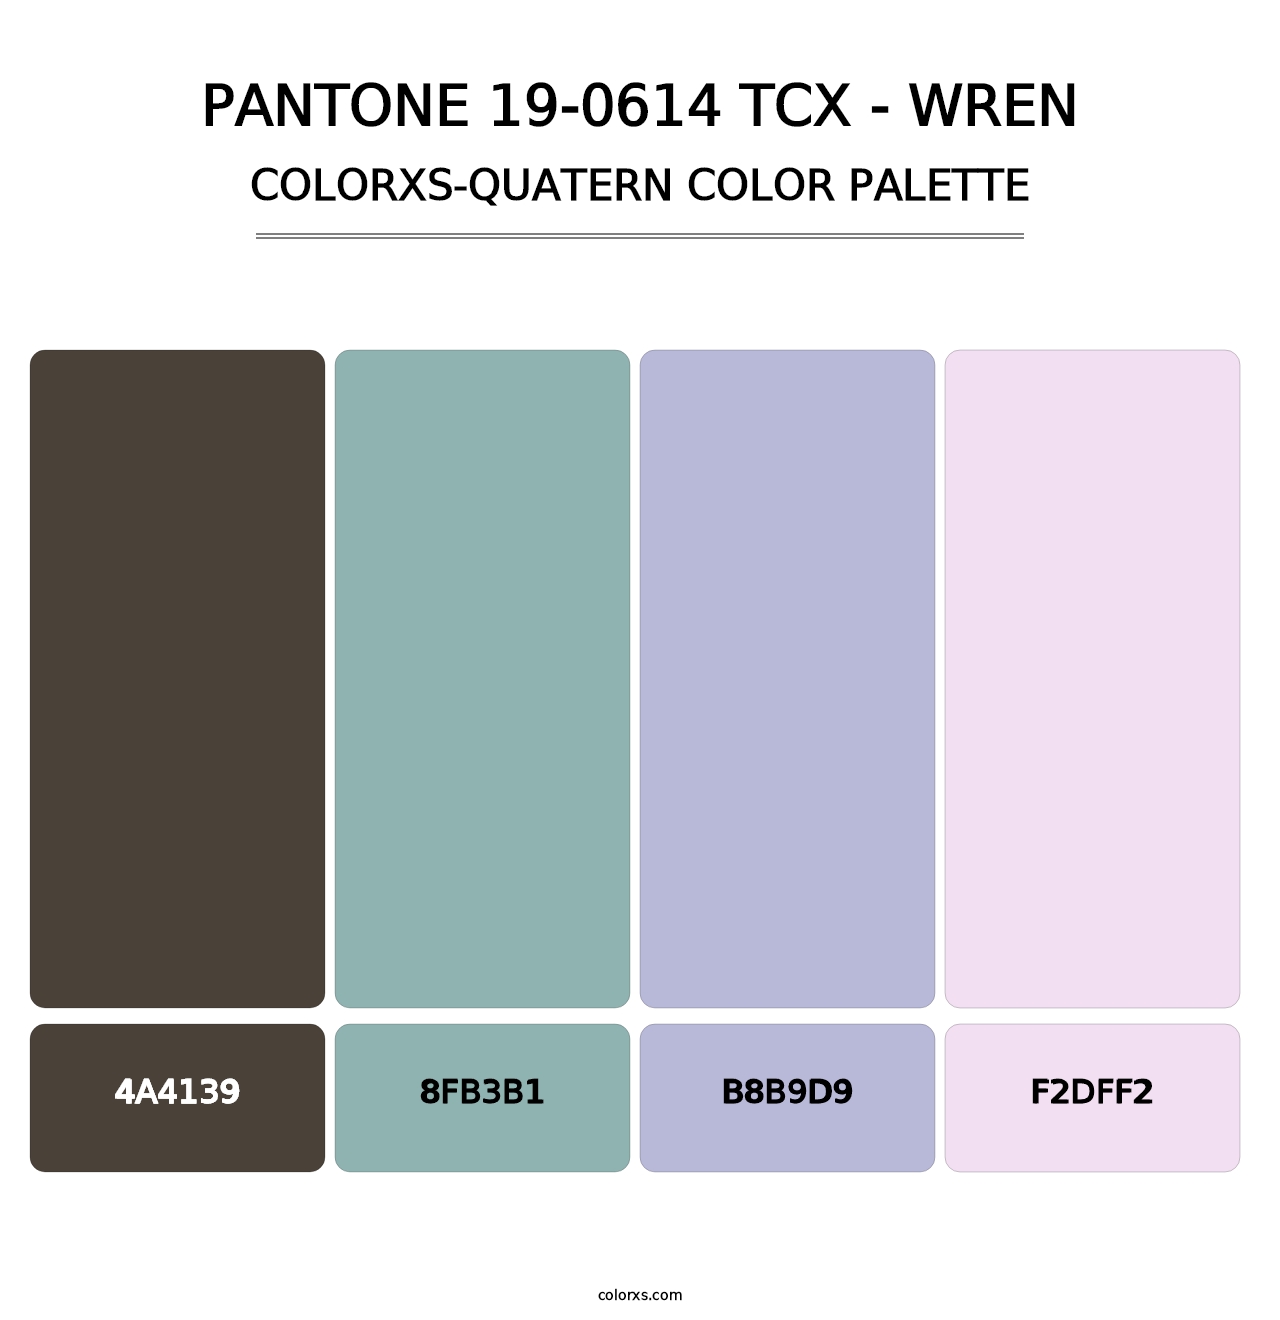 PANTONE 19-0614 TCX - Wren - Colorxs Quatern Palette